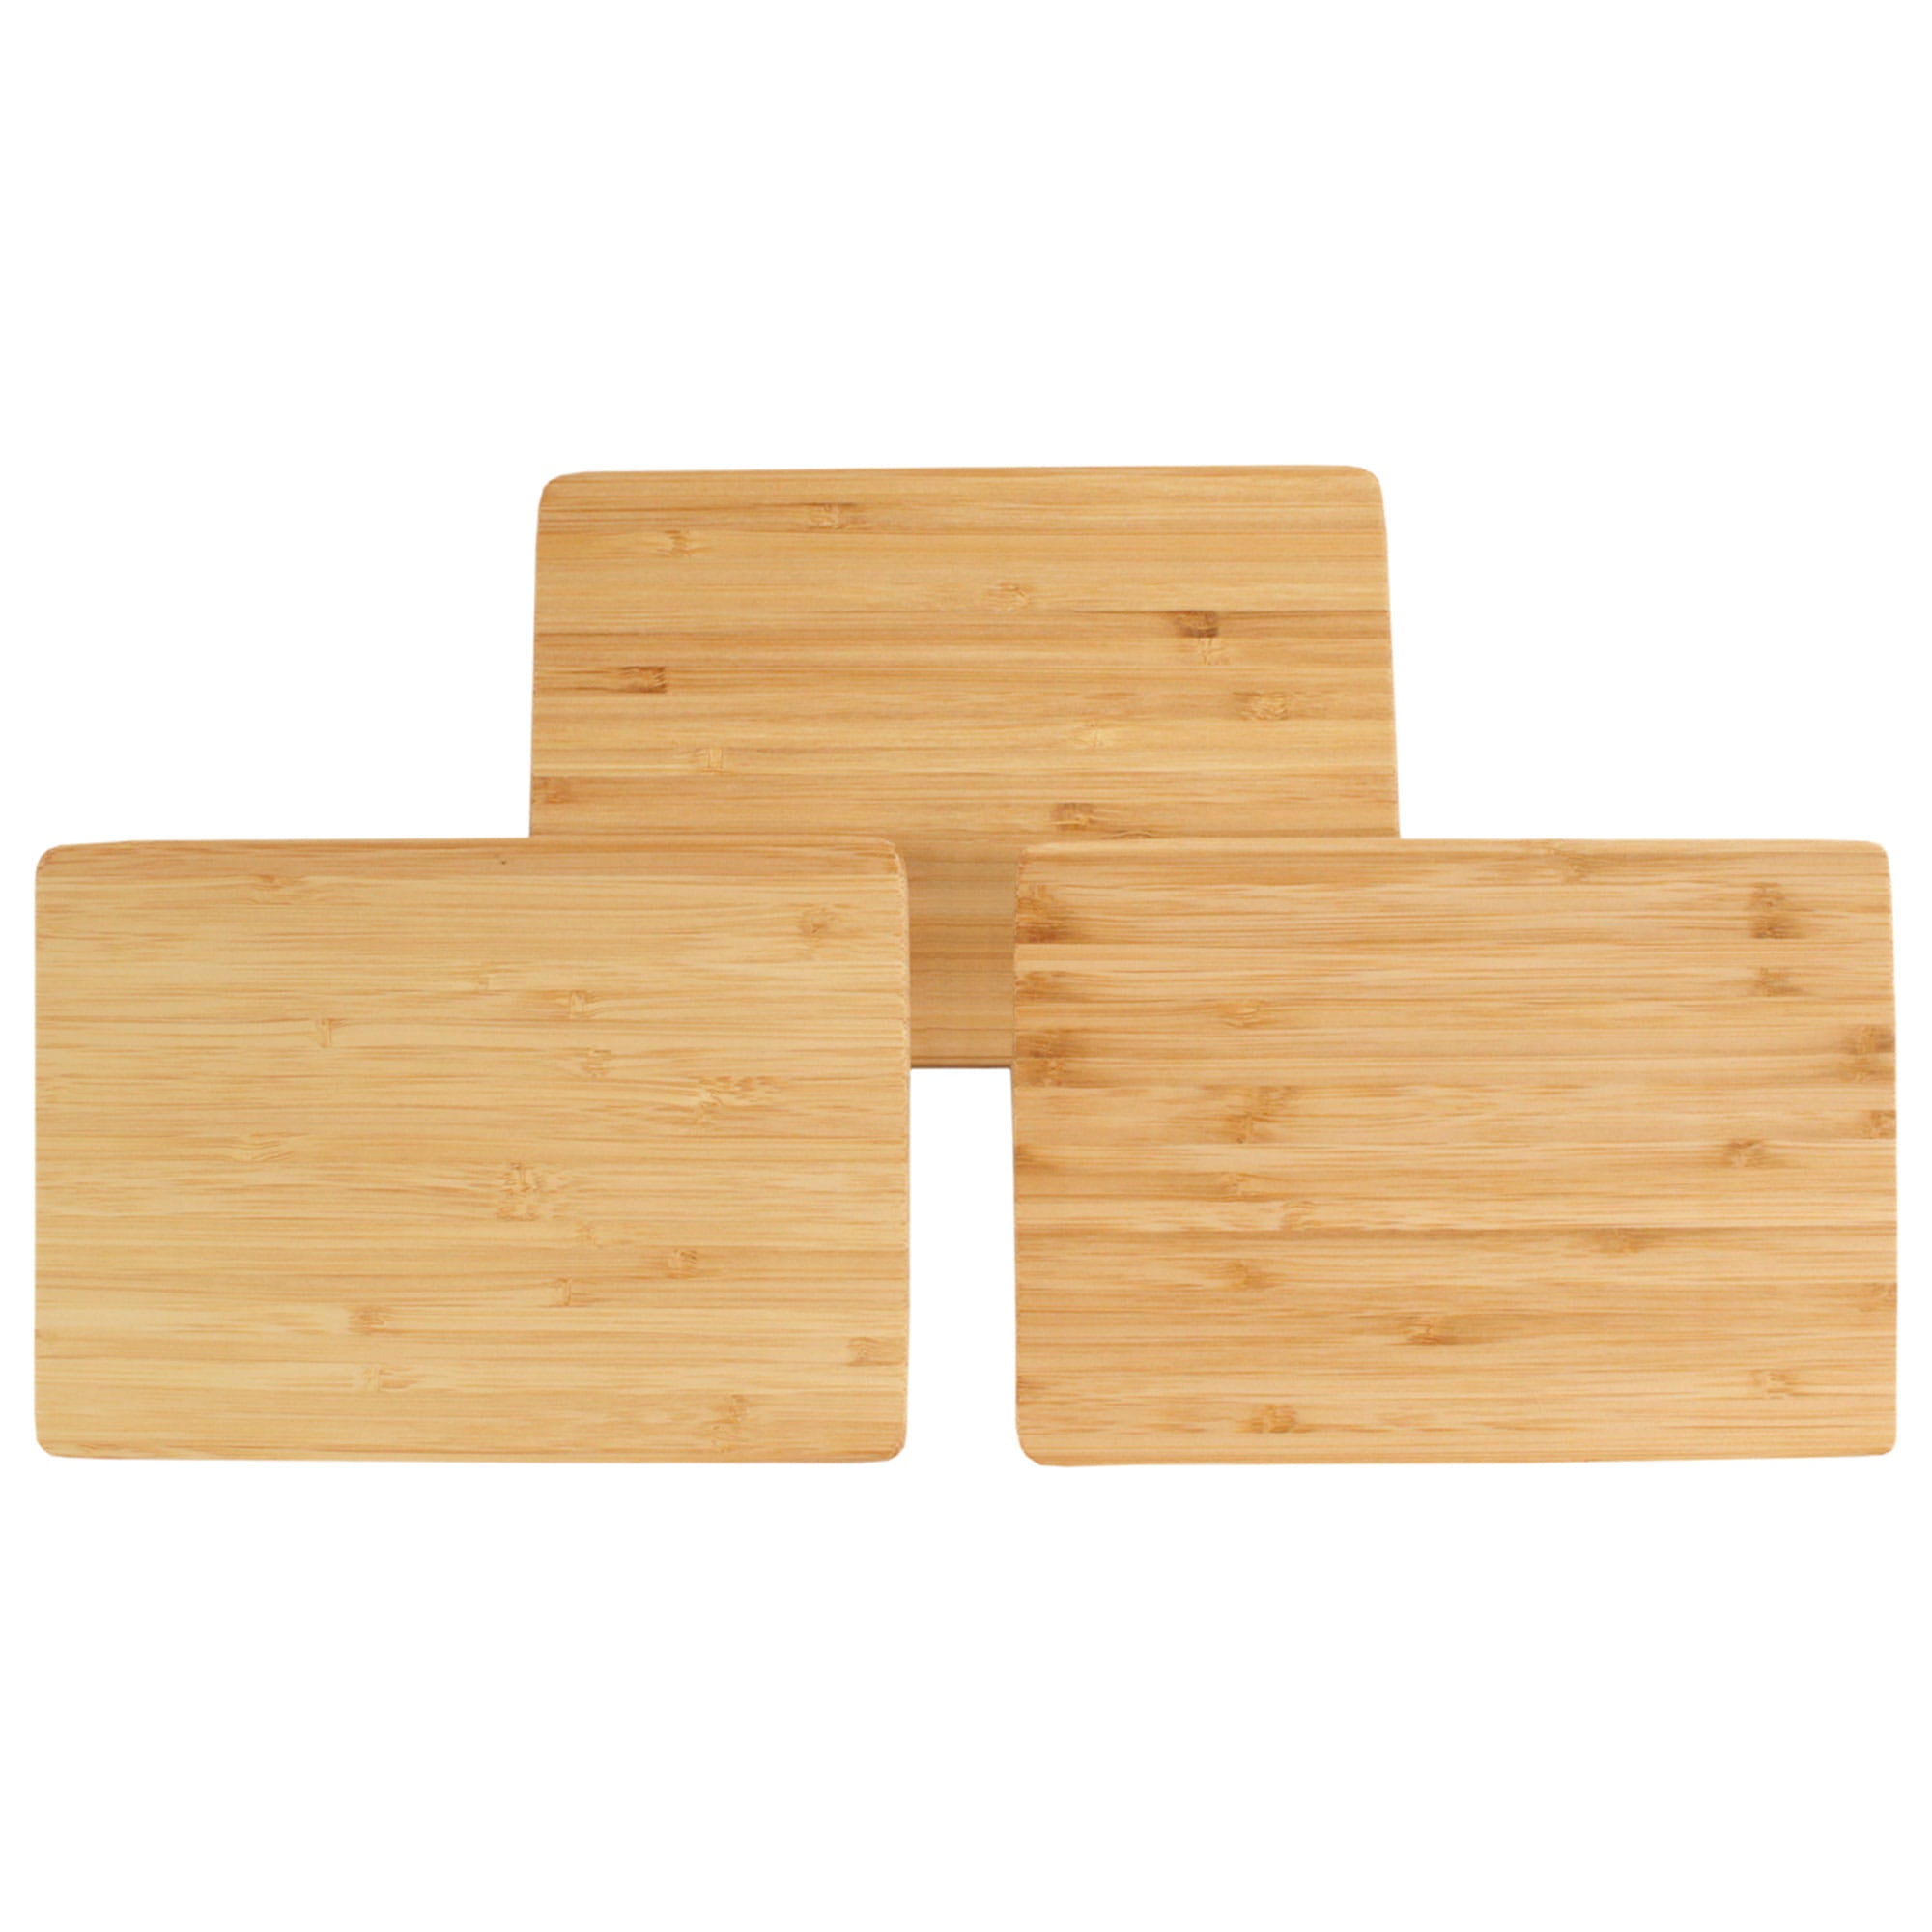 Thin Cutting Boards - 3/8 Inch